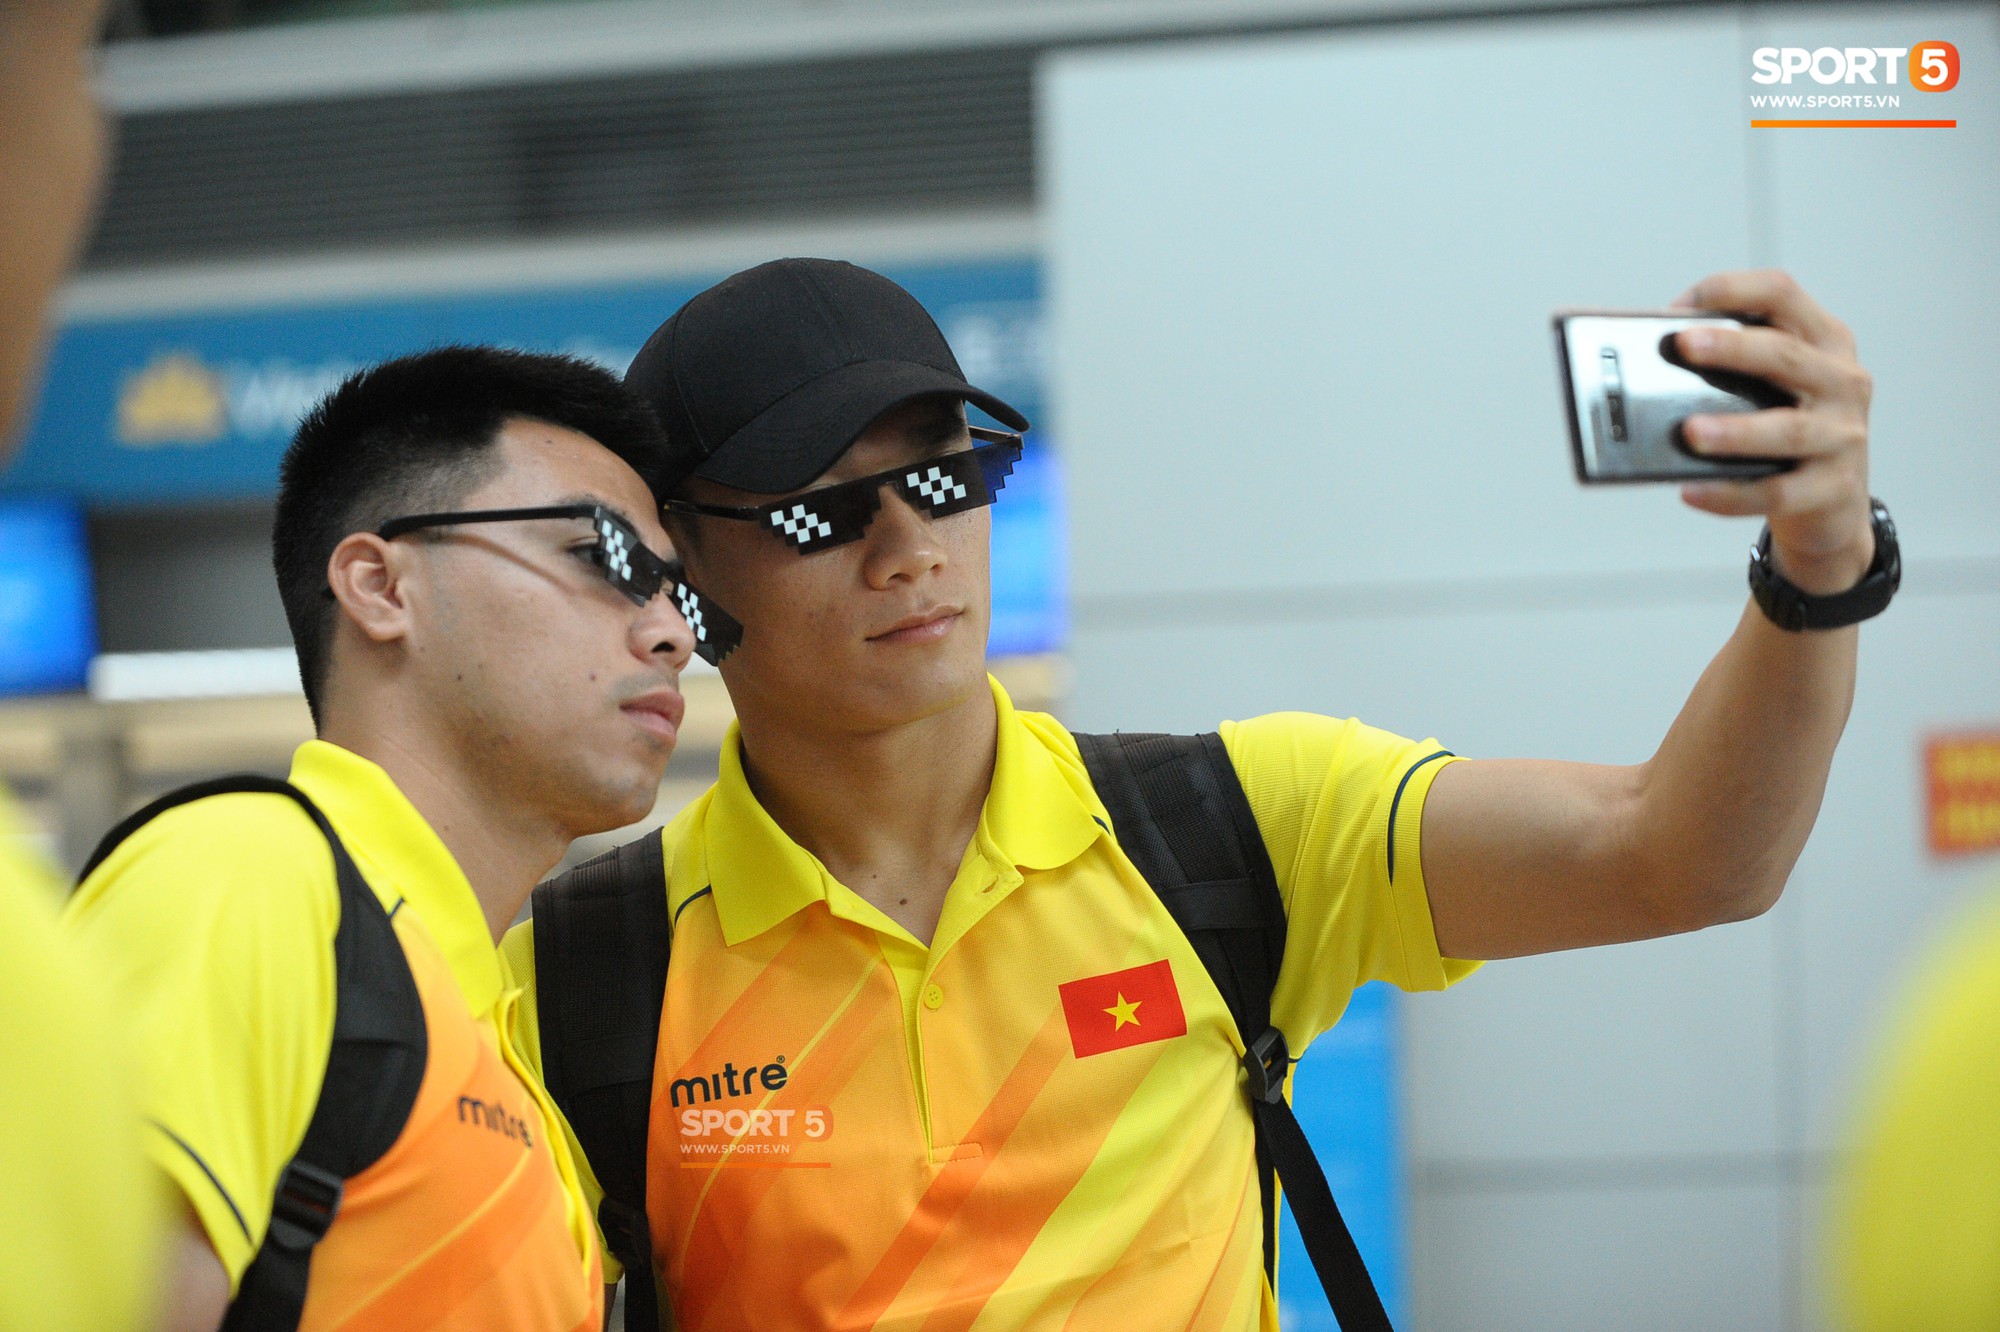 Những phụ kiện không thể tách rời các cầu thủ Olympic Việt Nam ở sân bay - Ảnh 1.